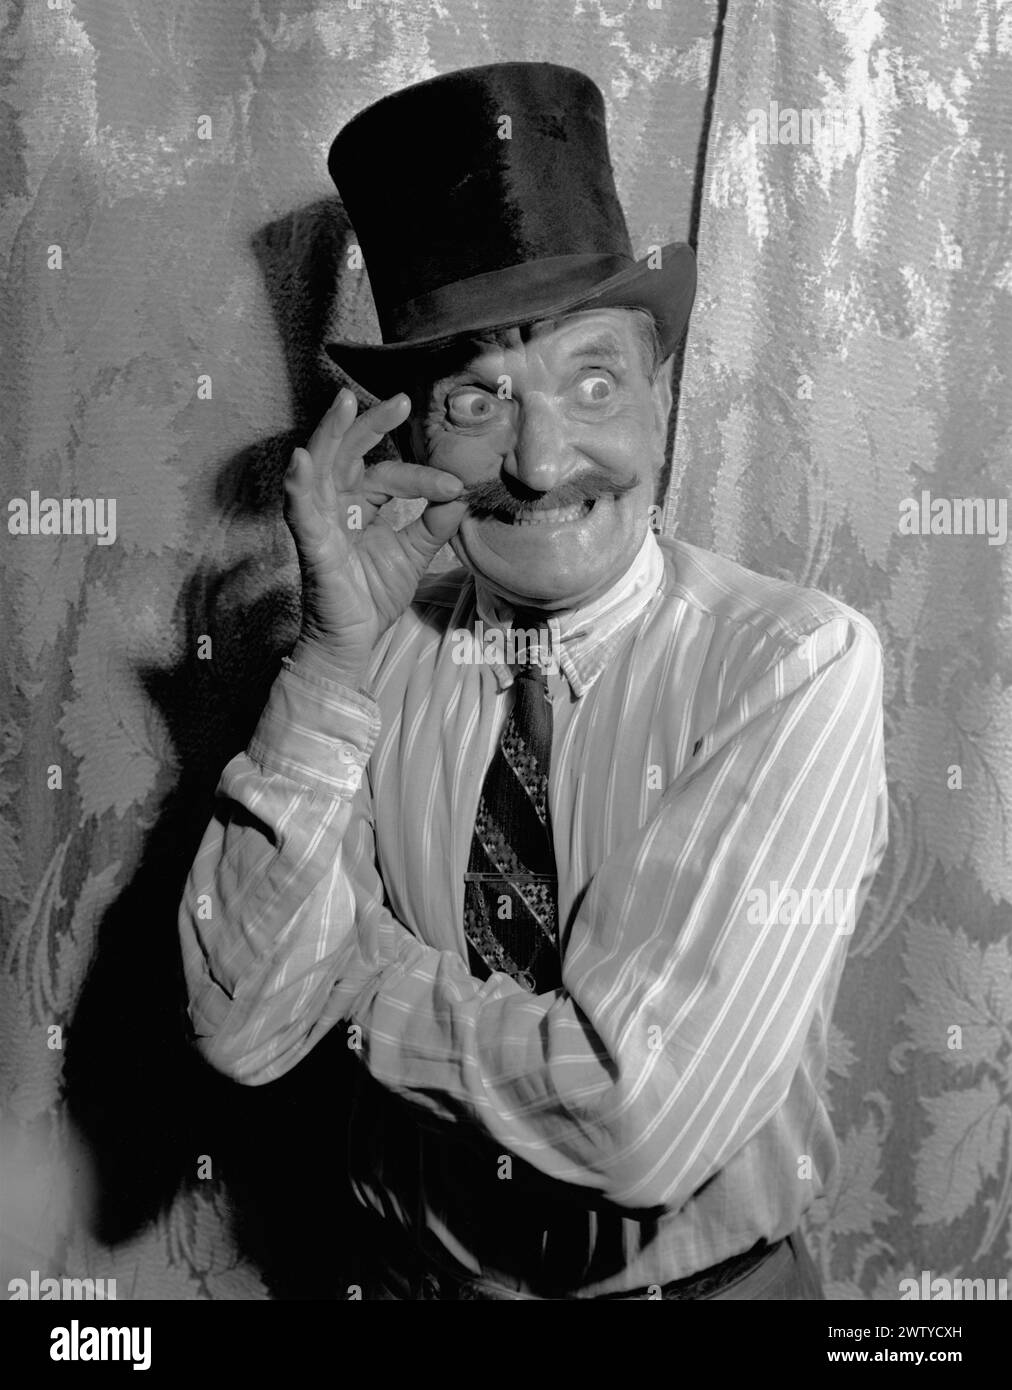 L'uomo più anziano con maglietta e cravatta e cappello crea un volto divertente con occhi sporgenti mentre torce i baffi. Intorno al 1950 Foto Stock